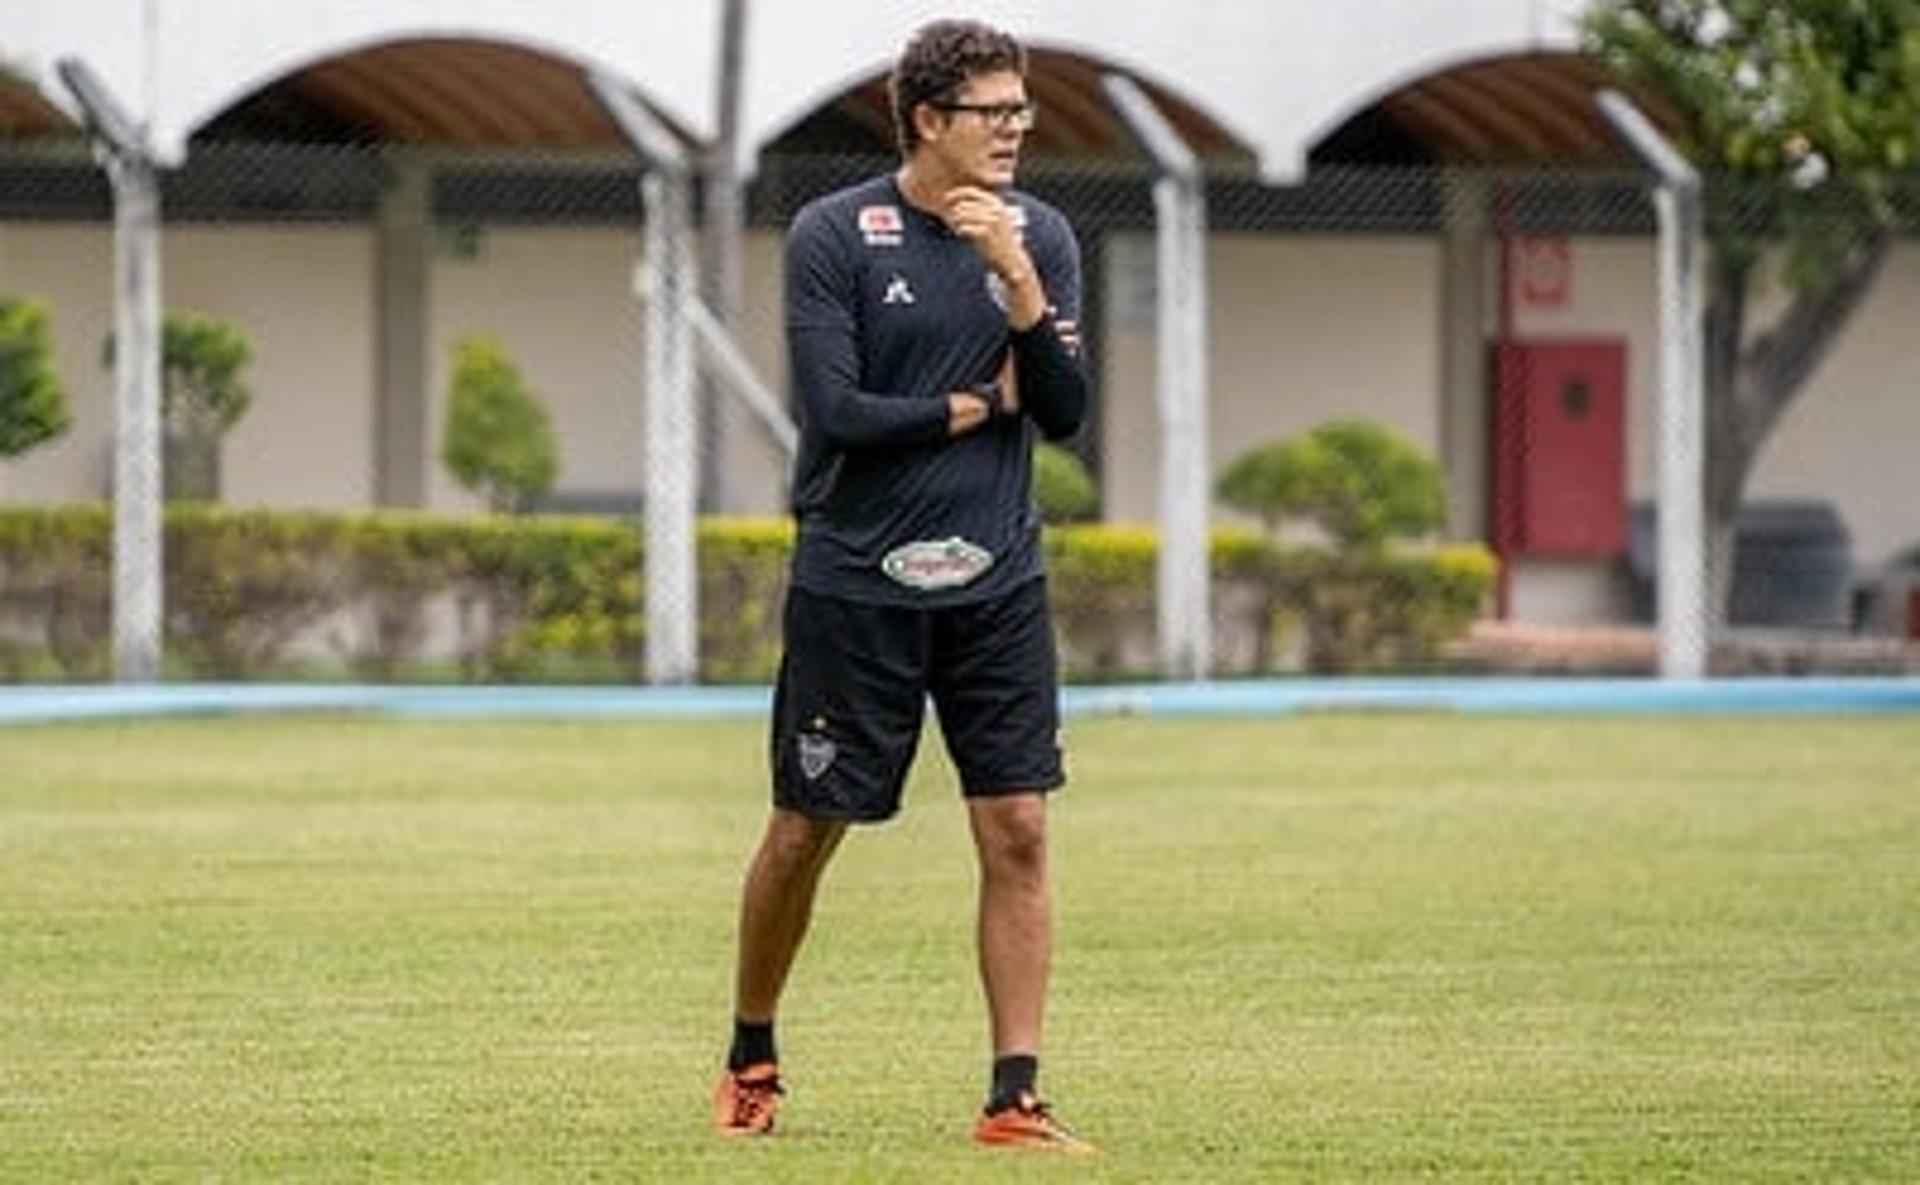 Hoffman Túlio está no Galo Feminino desde o início de 2020, após passar pelo rival Cruzeiro